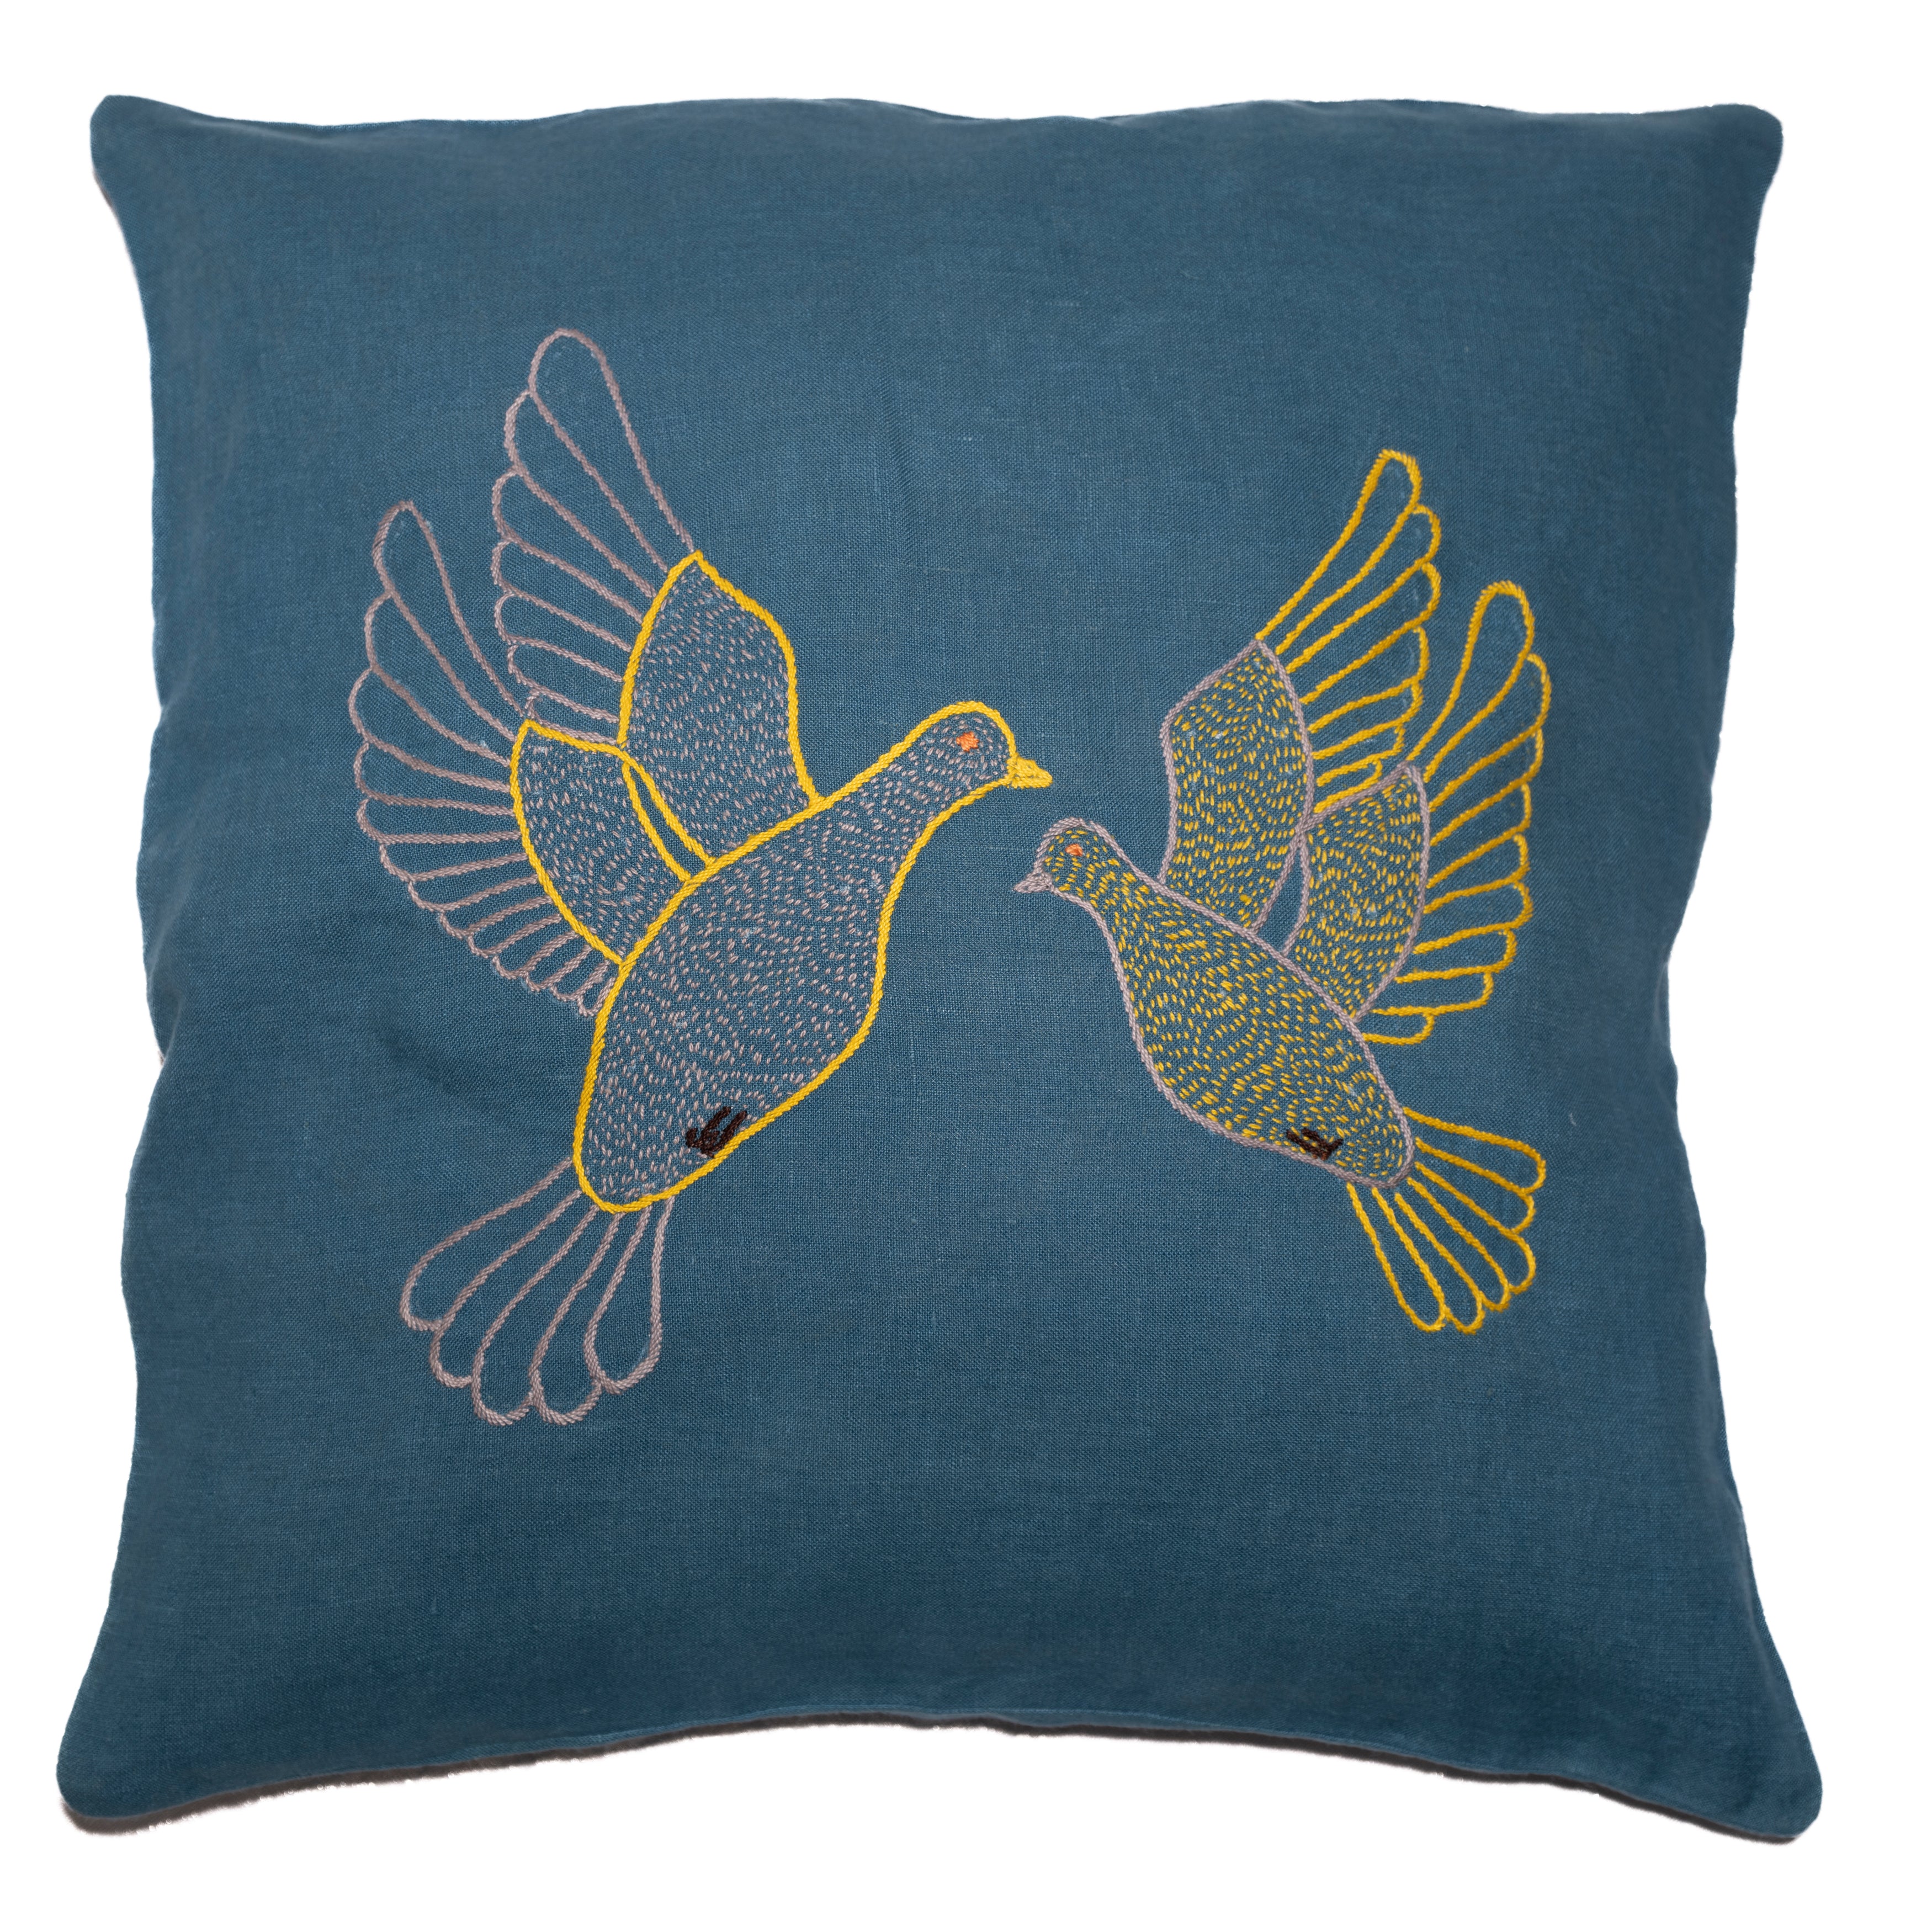 Flying dove pillow on blue linen